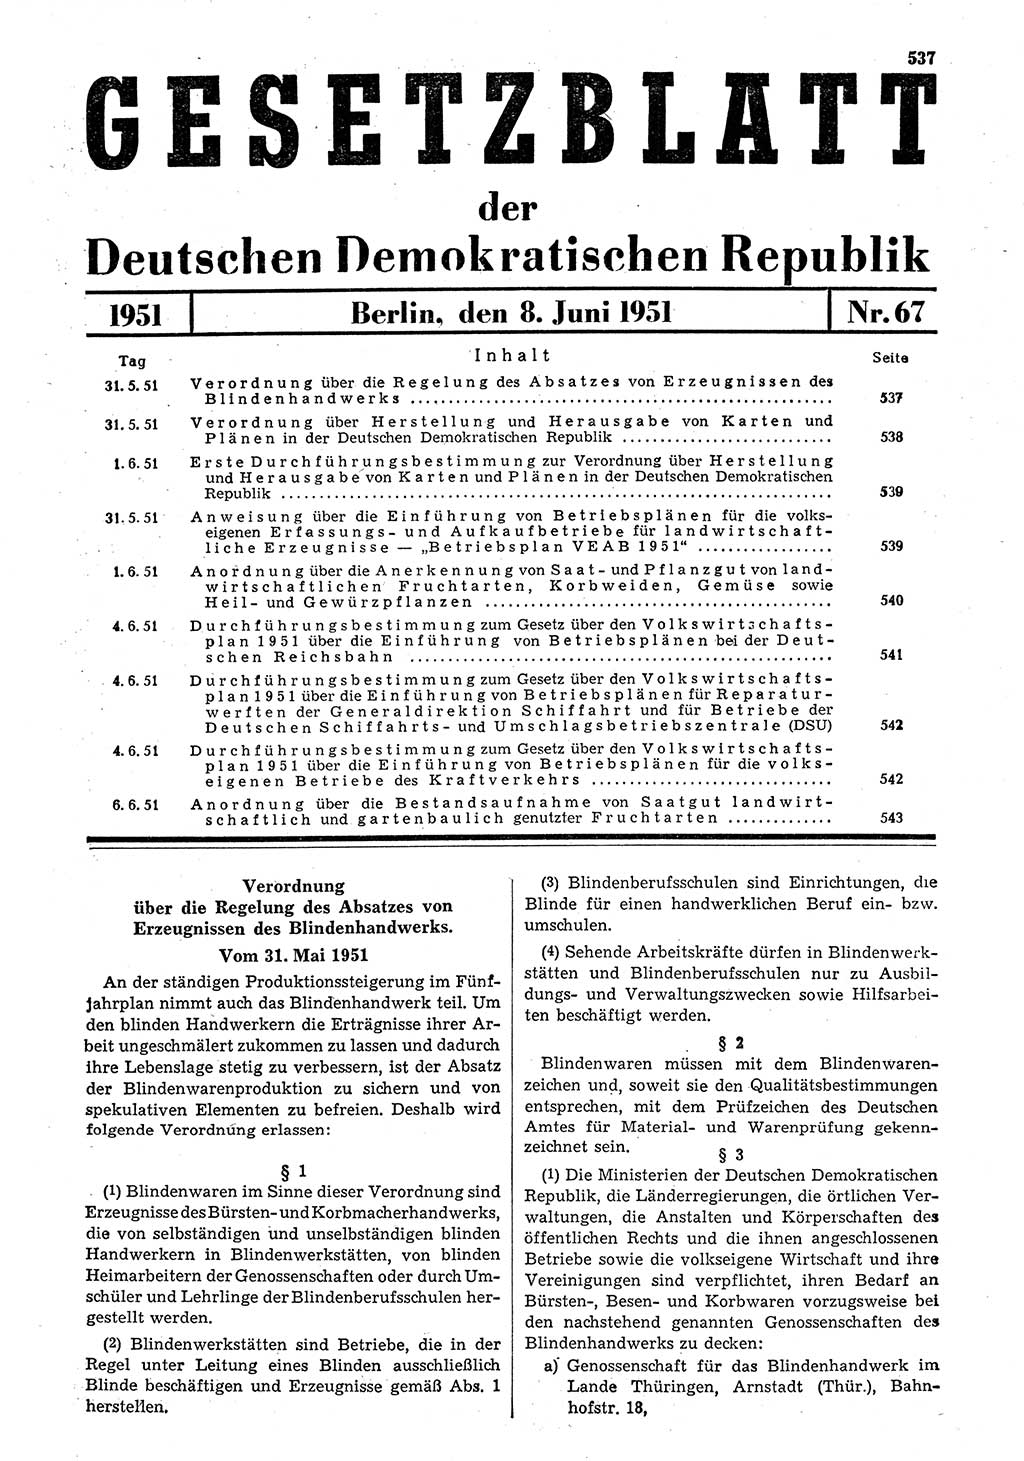 Gesetzblatt (GBl.) der Deutschen Demokratischen Republik (DDR) 1951, Seite 537 (GBl. DDR 1951, S. 537)